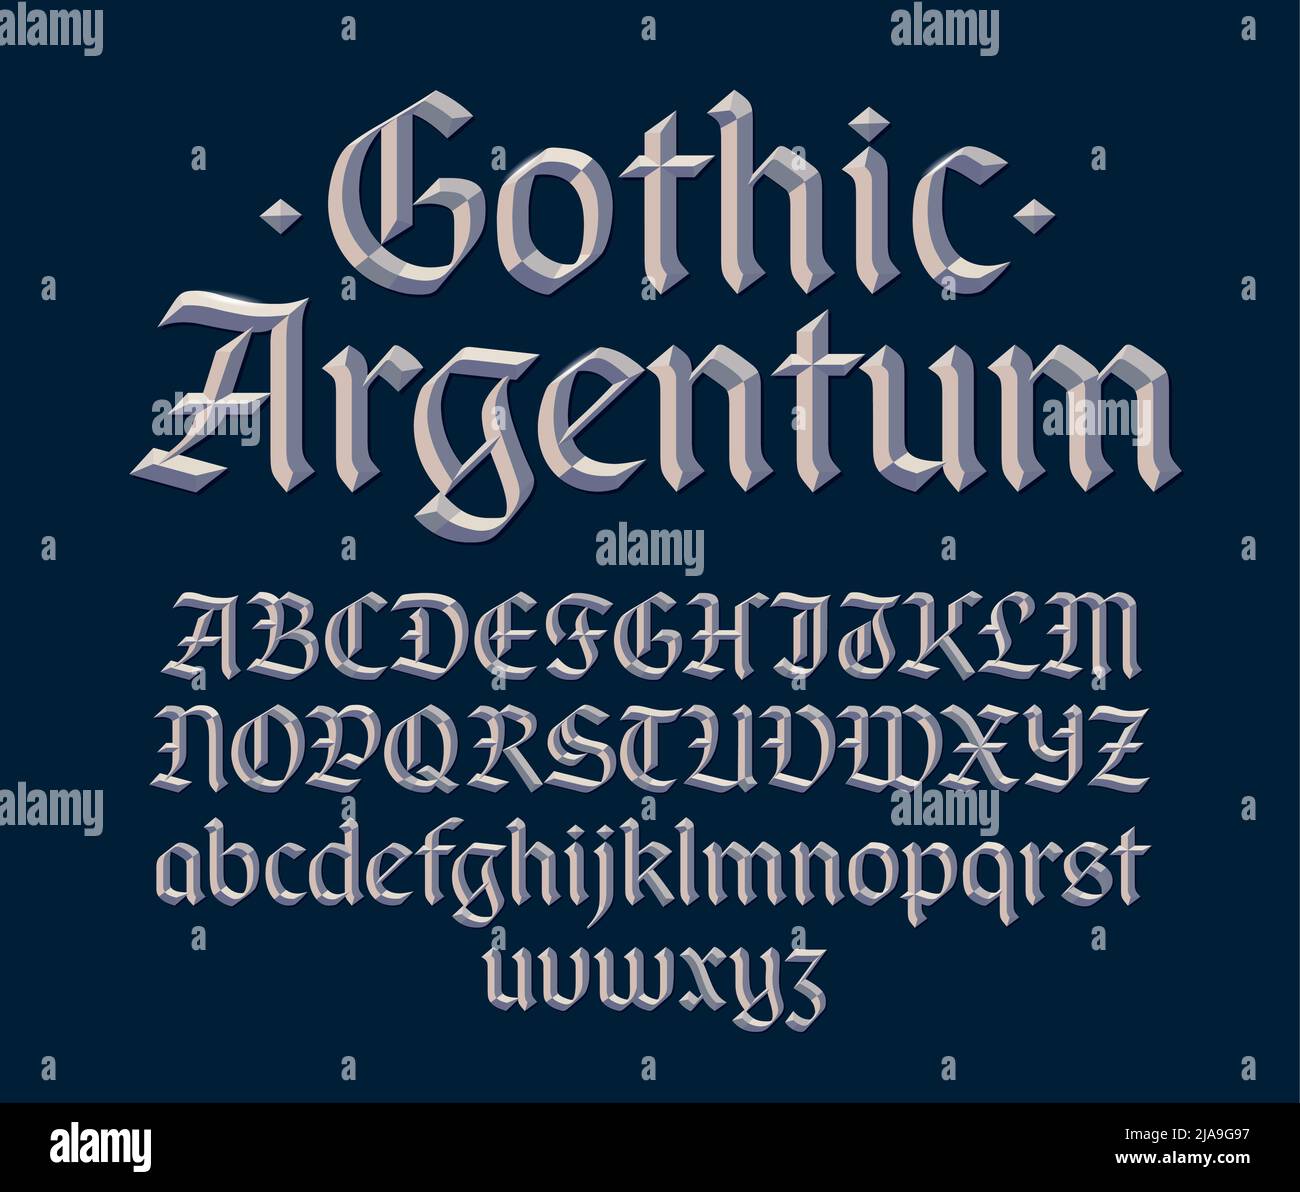 Gotische abgeschrägte Schrift, dekorative silbermetallische schrift mit 3D Buchstaben. Groß- und Kleinbuchstaben. Vektorgrafik. Stock Vektor